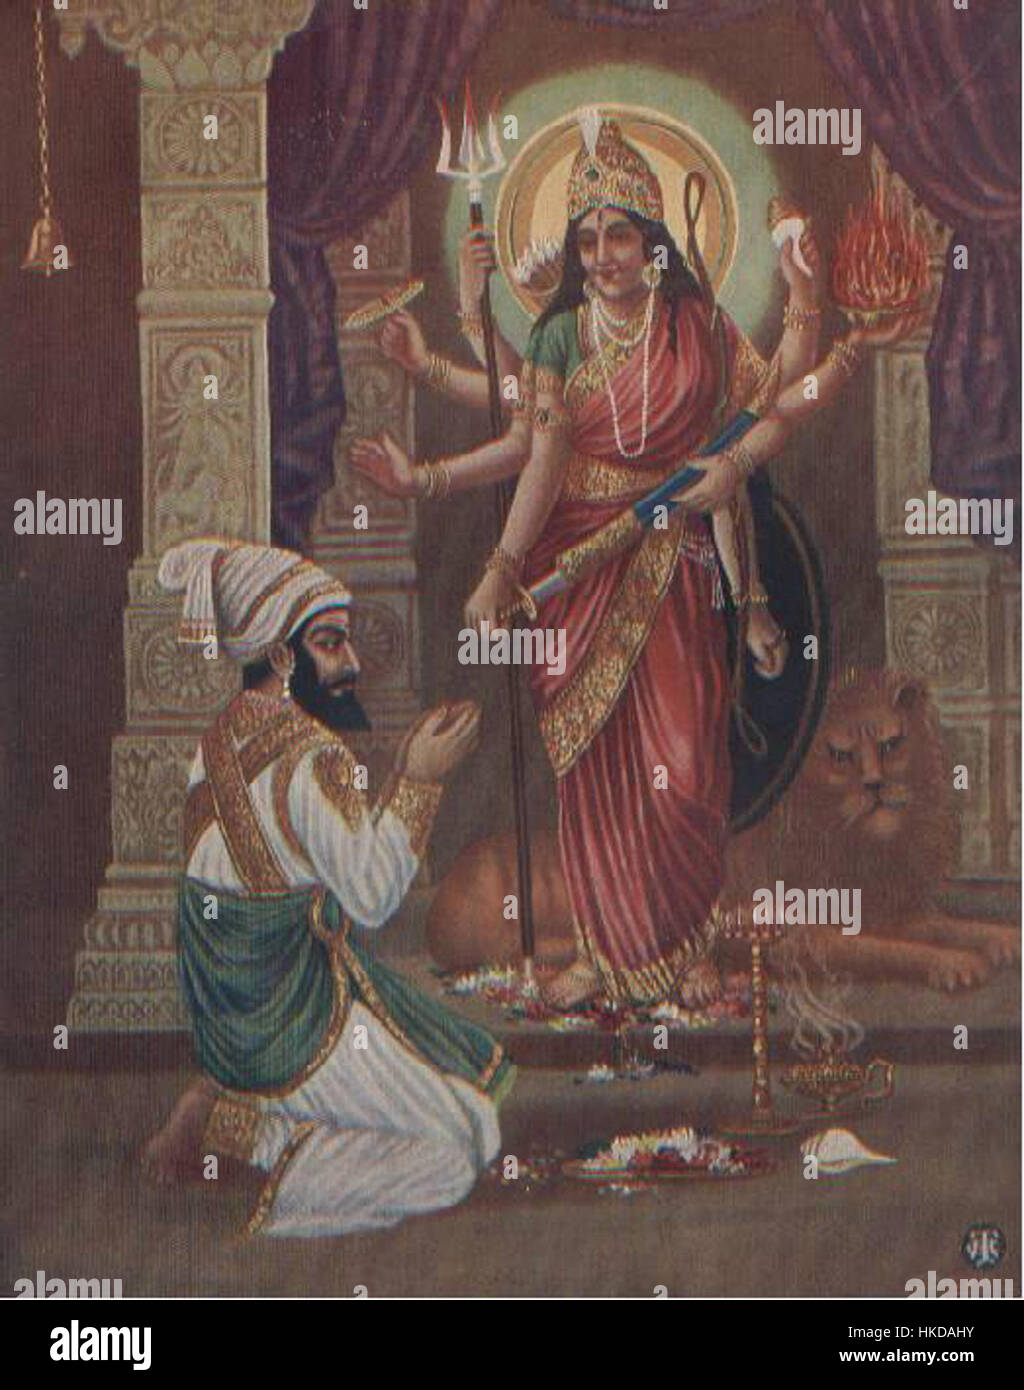 Shivaji recevoir les bénédictions de la déesse (bazar de l'art, 1940) Banque D'Images